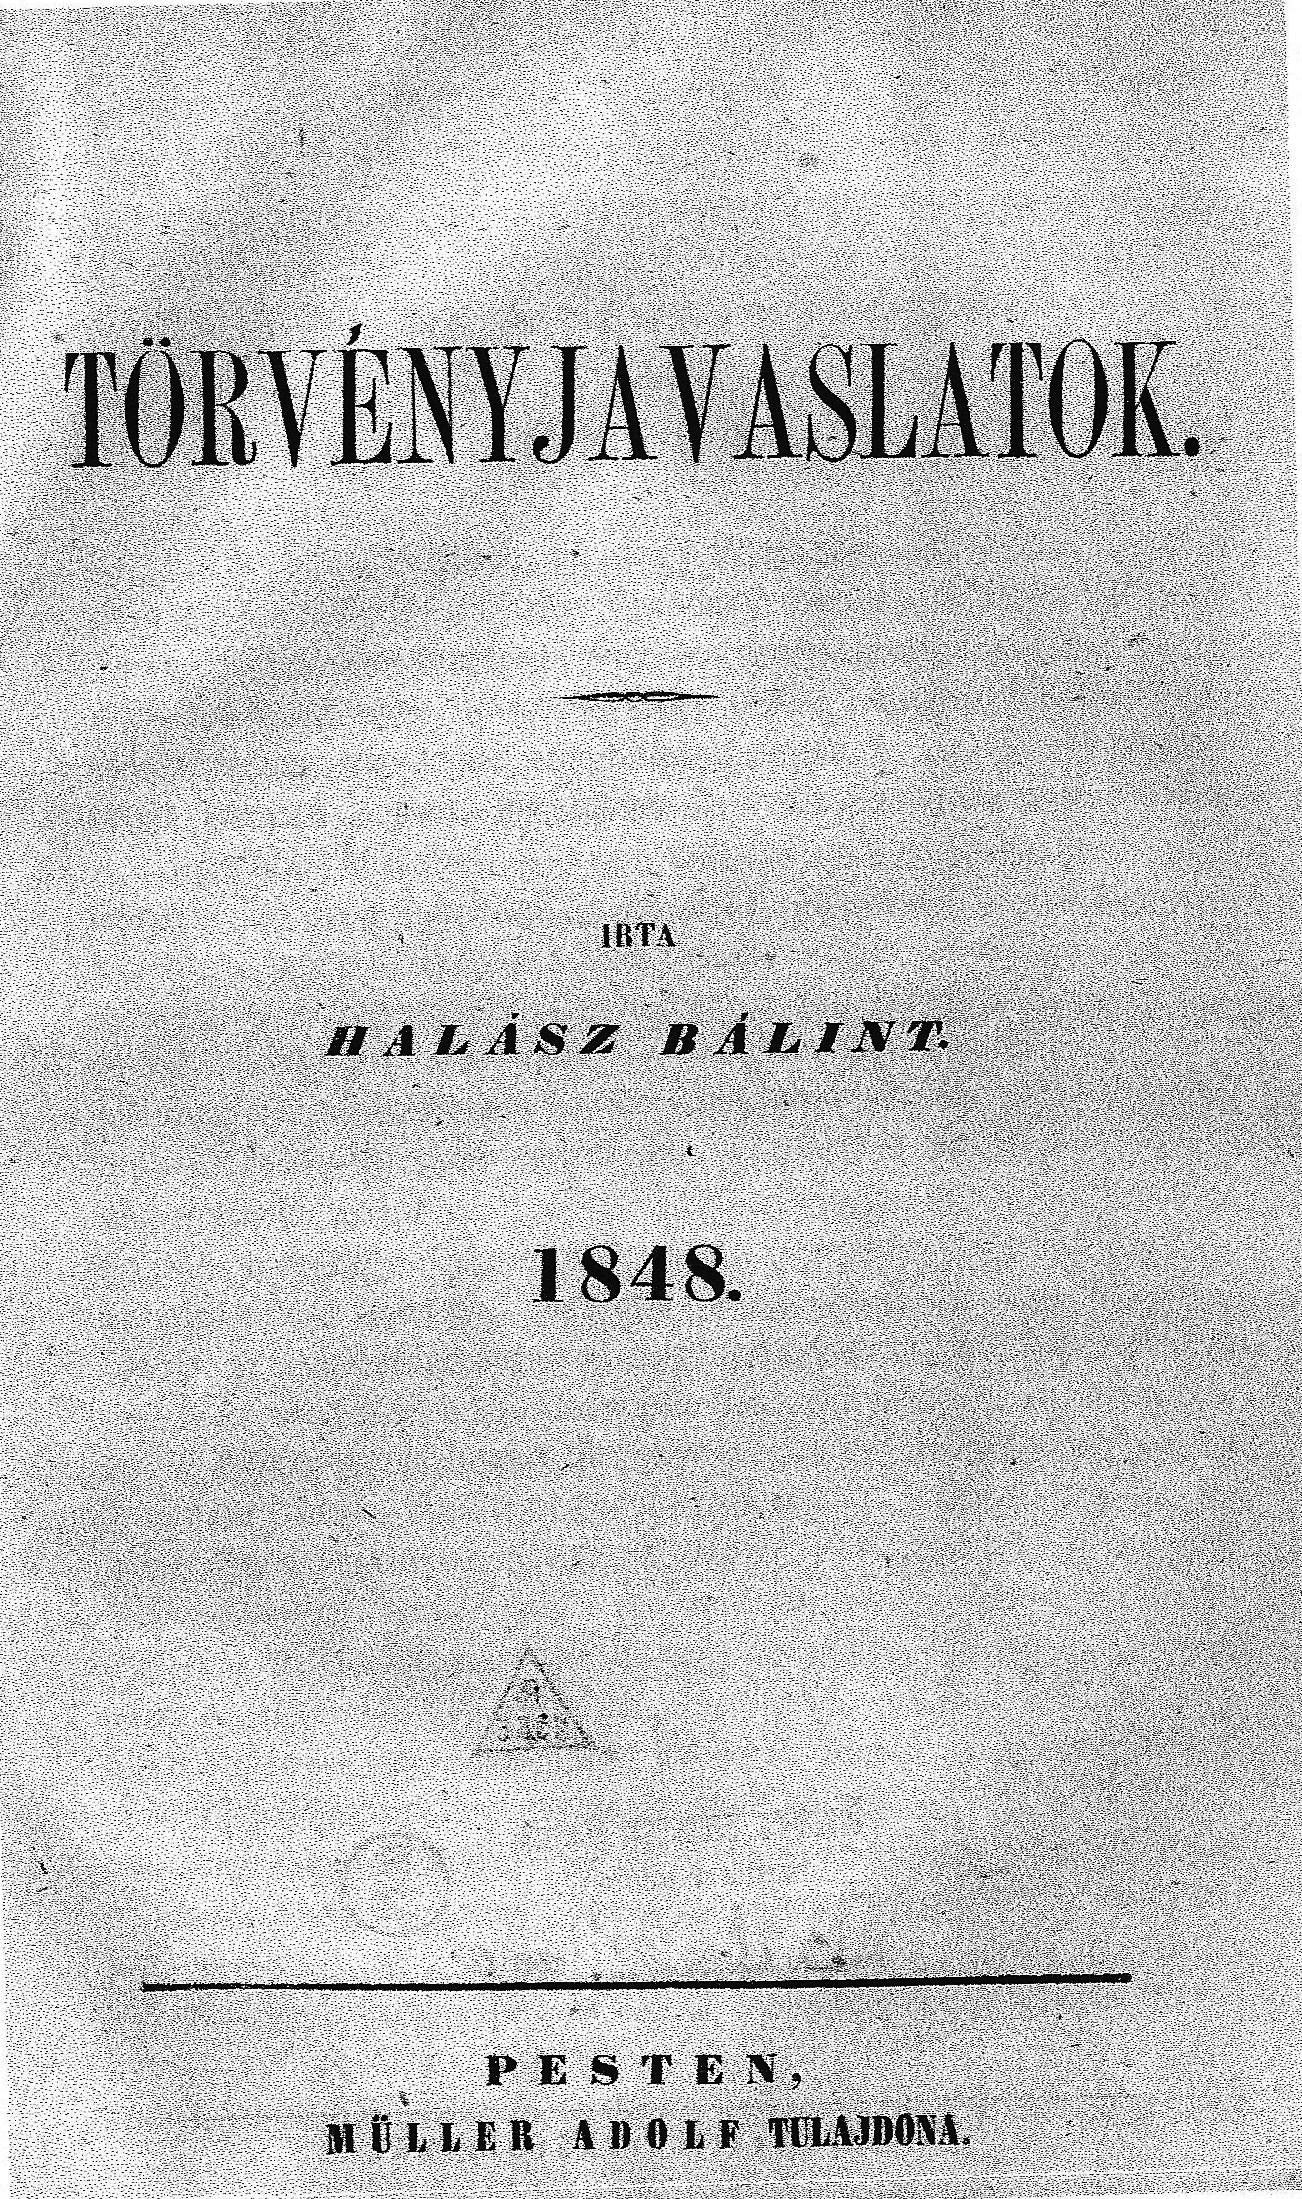 Dabasi Halász Bálint 1848-ban kiadott „Törvényjavaslatok” című kötete